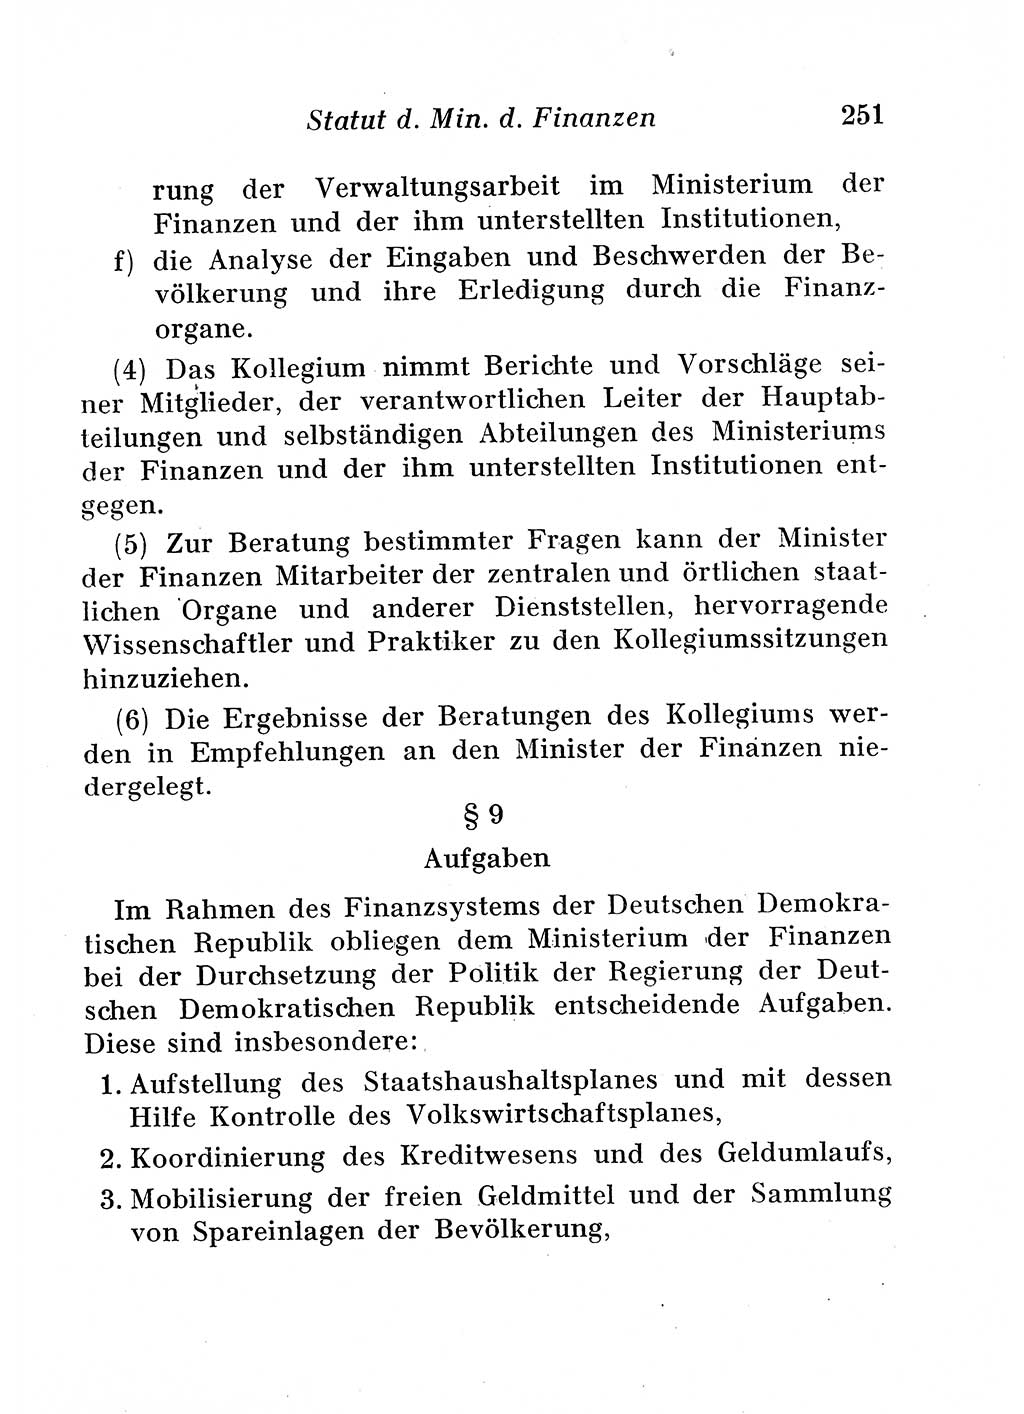 Staats- und verwaltungsrechtliche Gesetze der Deutschen Demokratischen Republik (DDR) 1958, Seite 251 (StVerwR Ges. DDR 1958, S. 251)